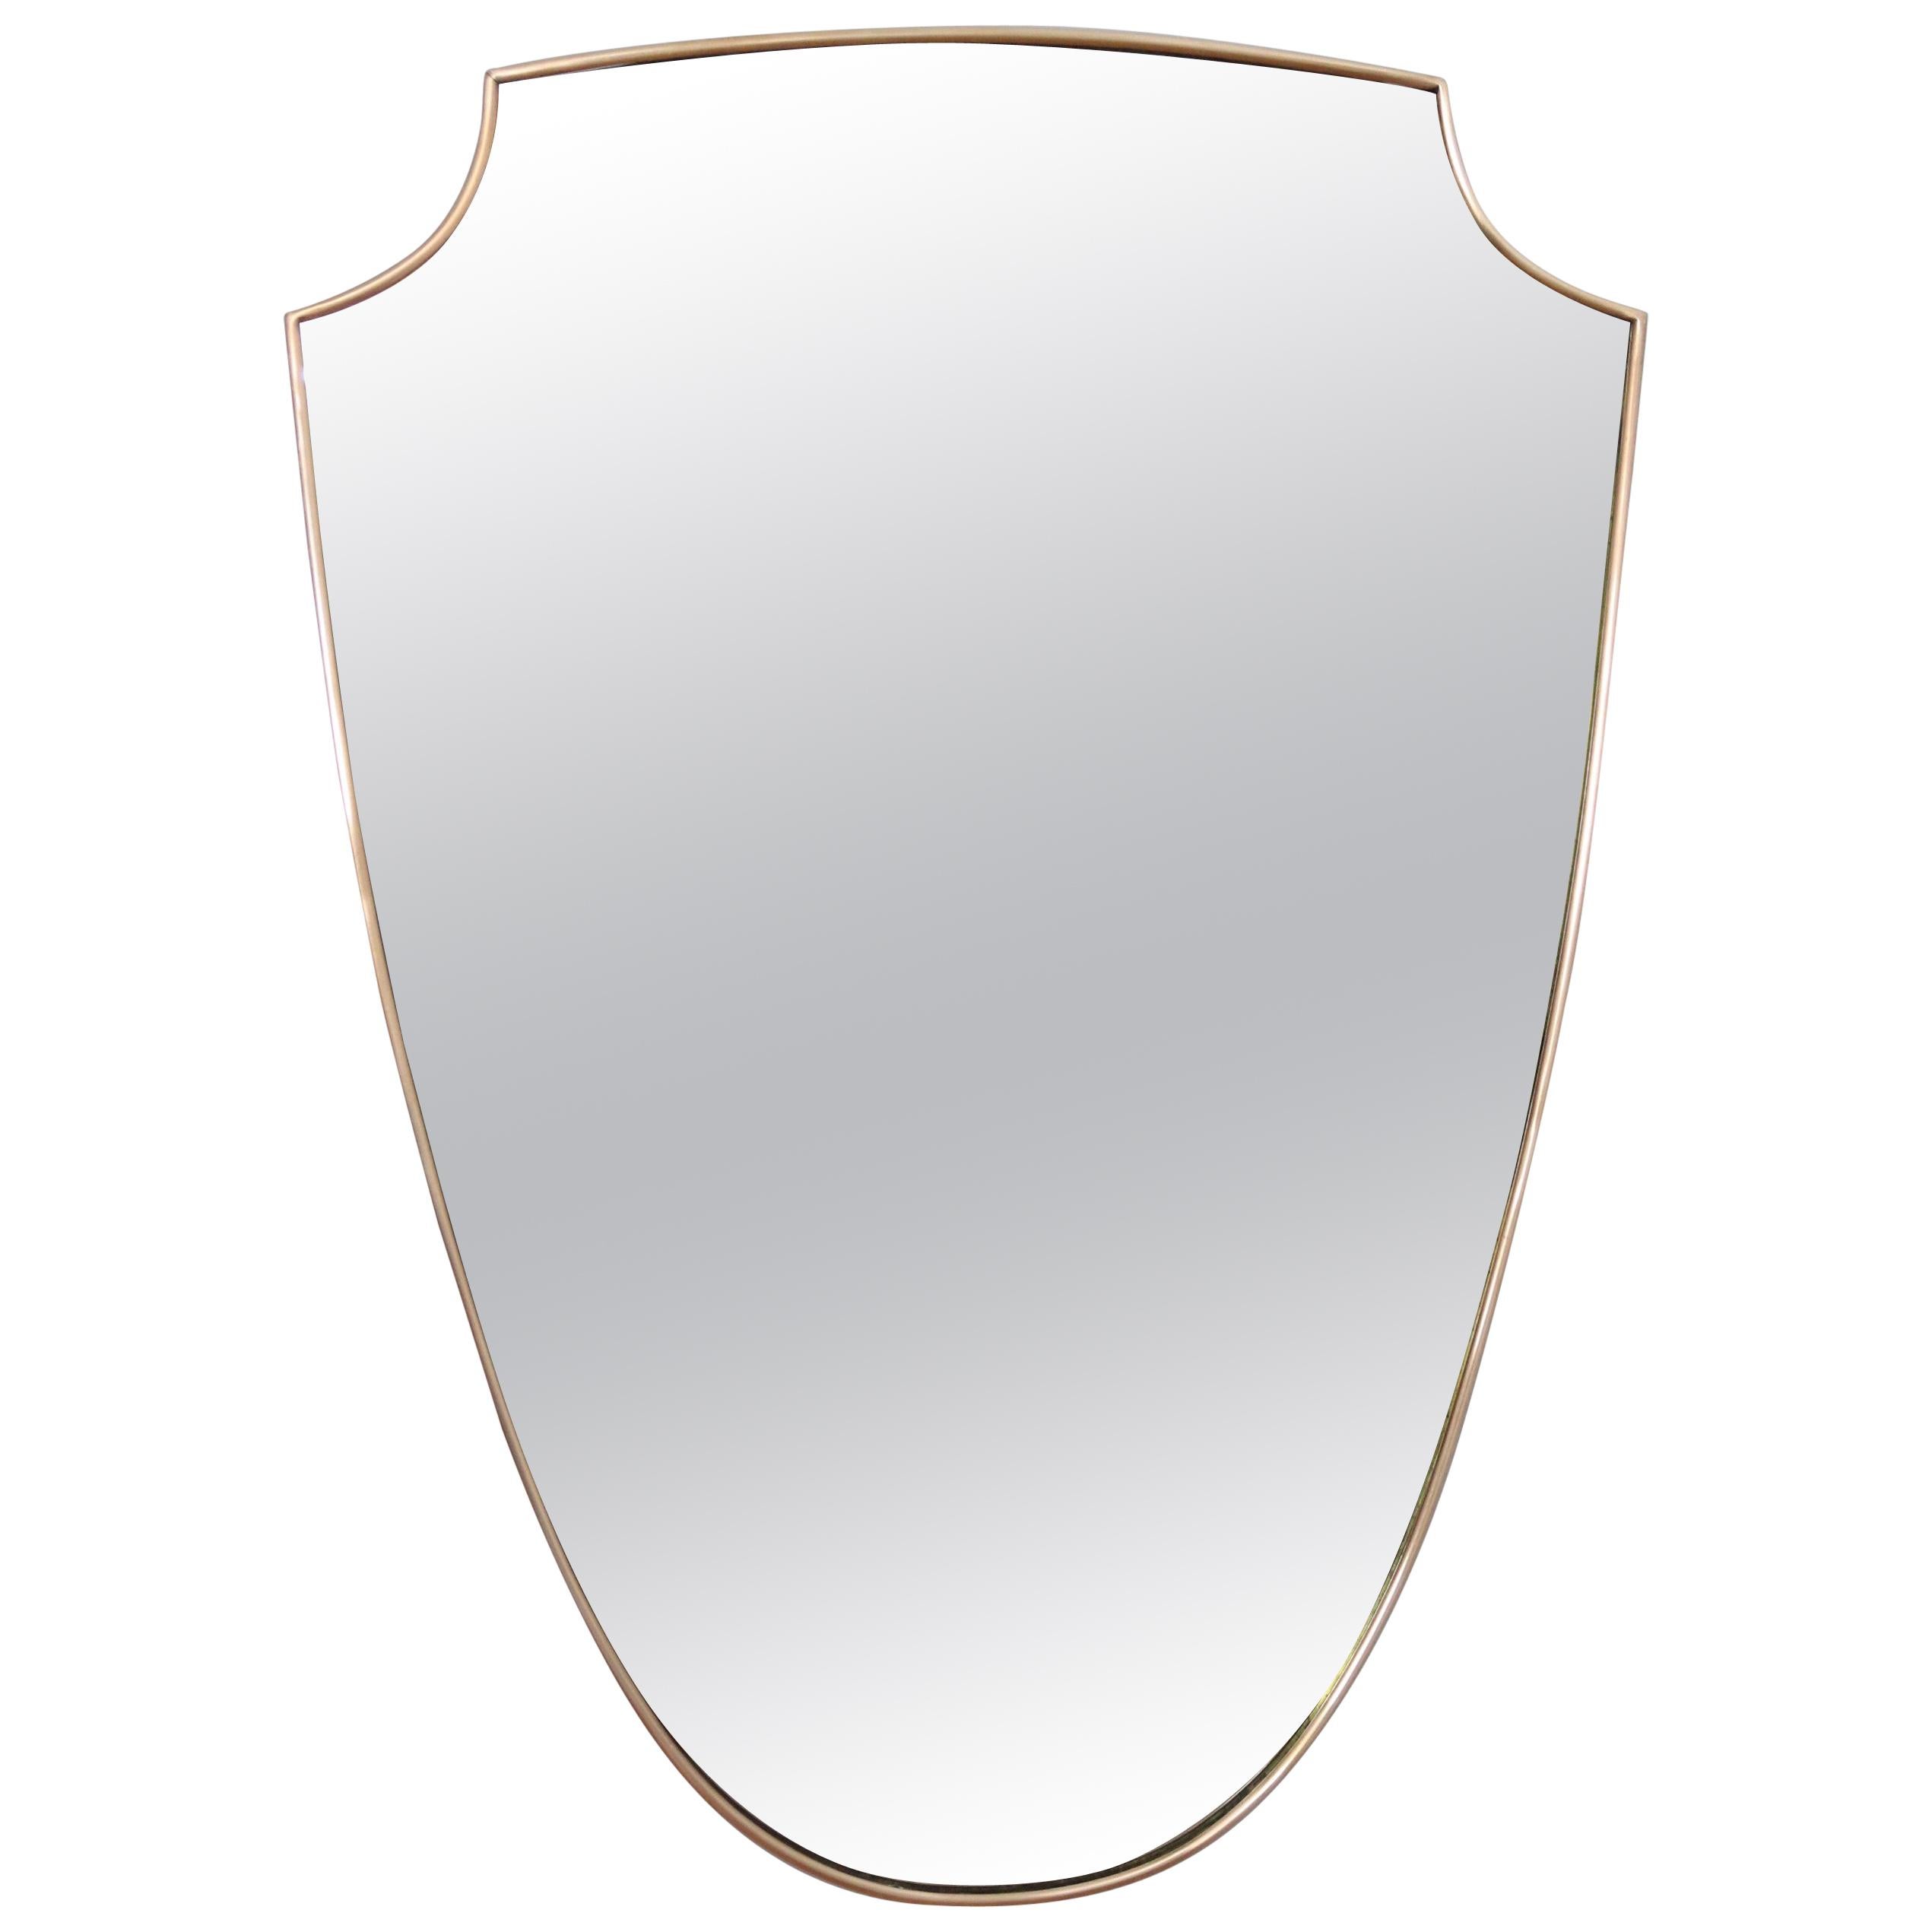 Italian Midcentury Brass Wall Mirror, 1950s